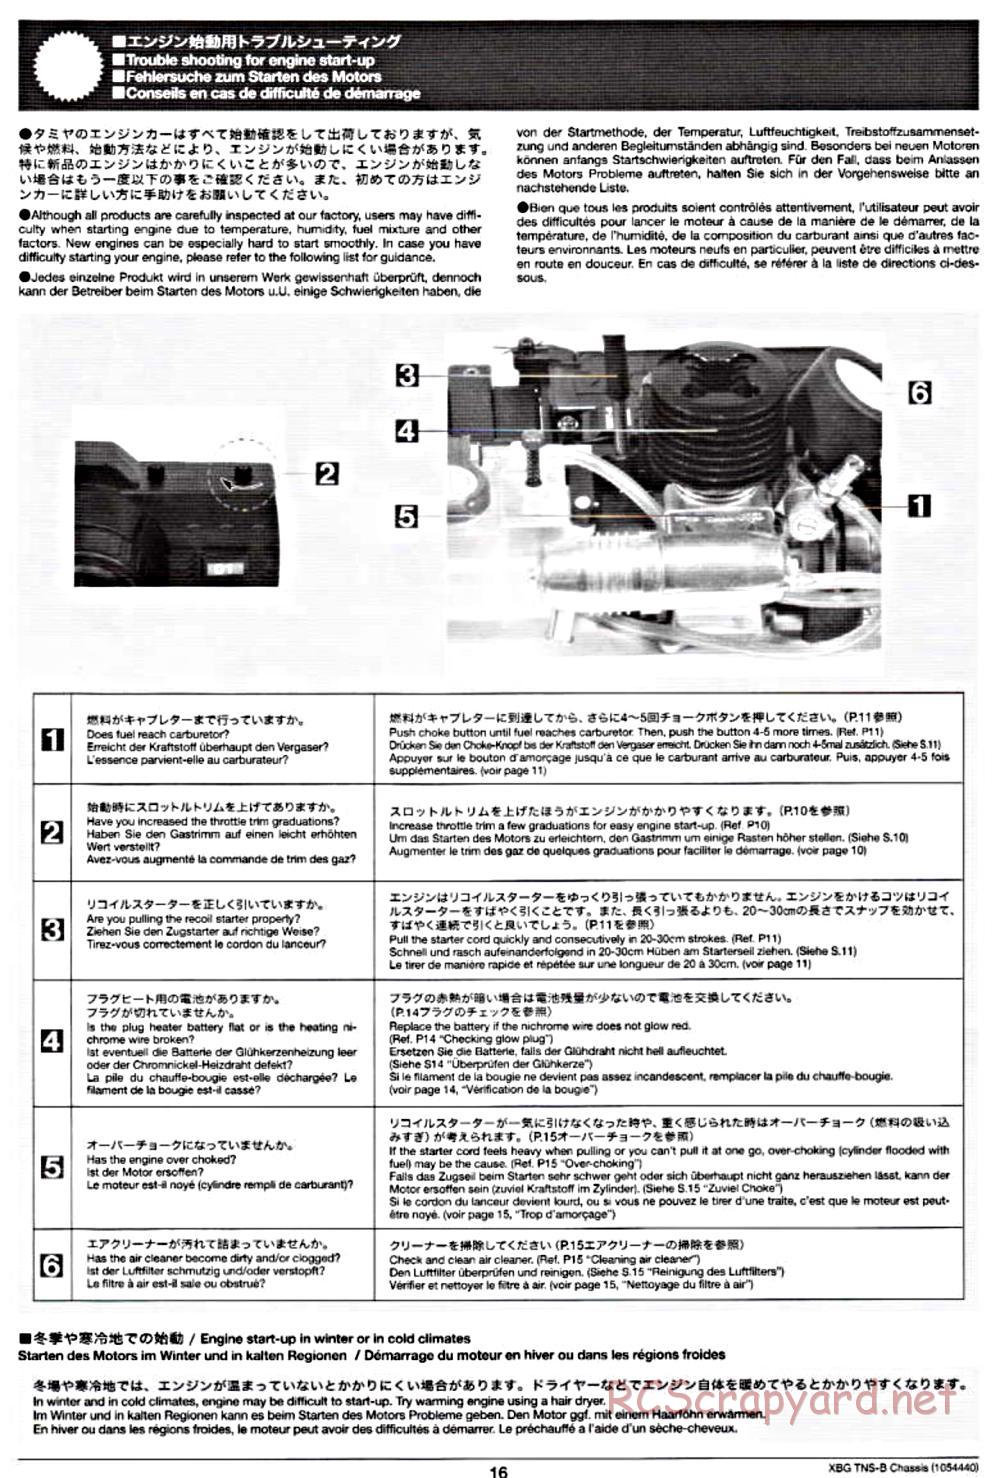 Tamiya - TNS-B Chassis - Manual - Page 16